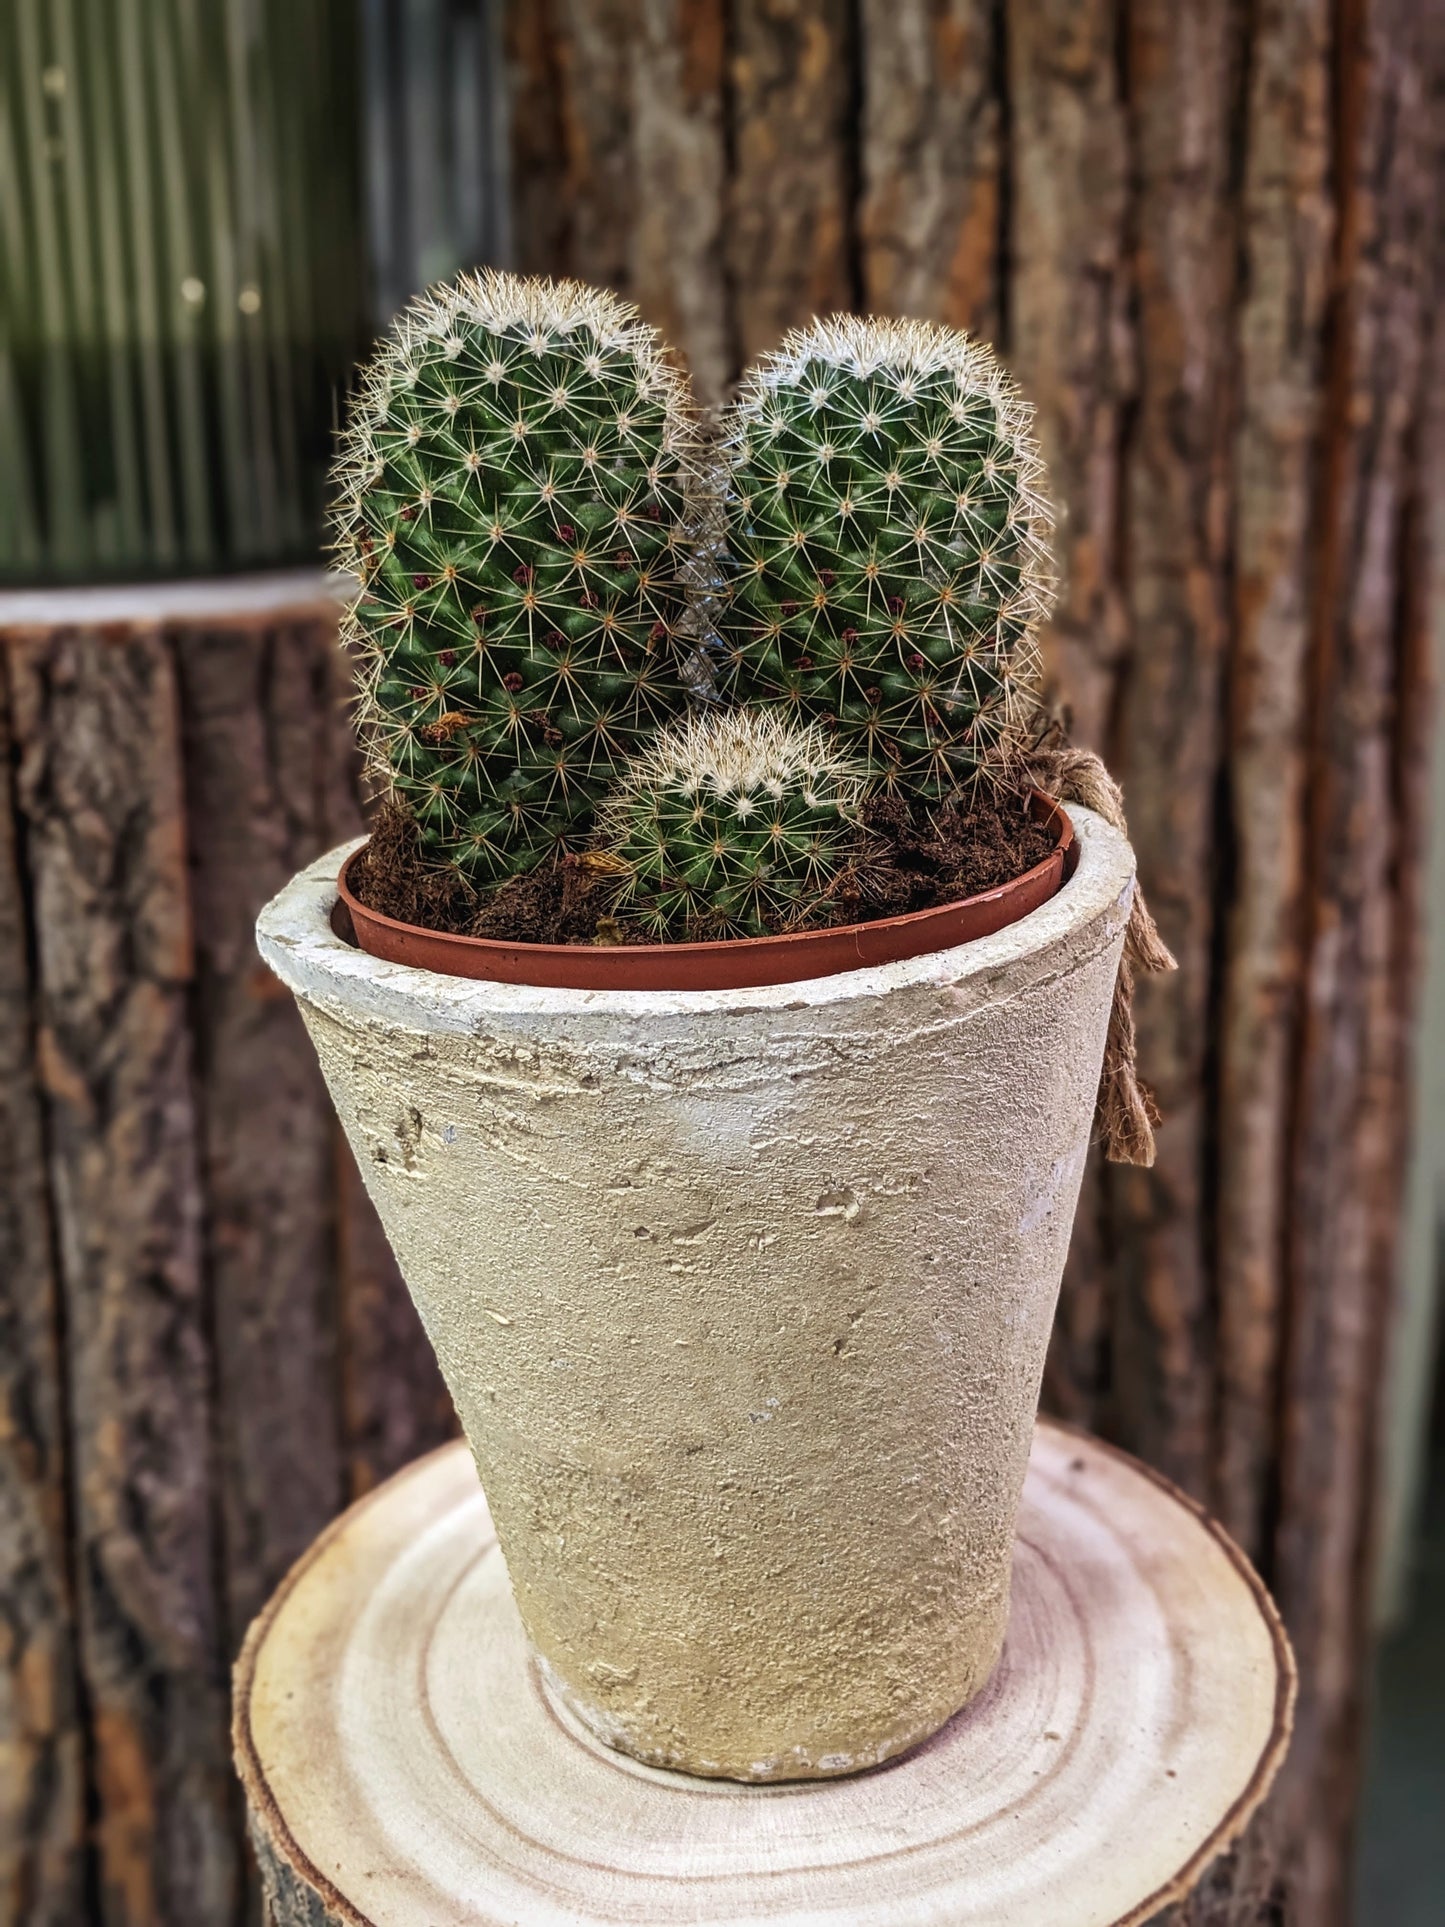 Pokey (Cactus)